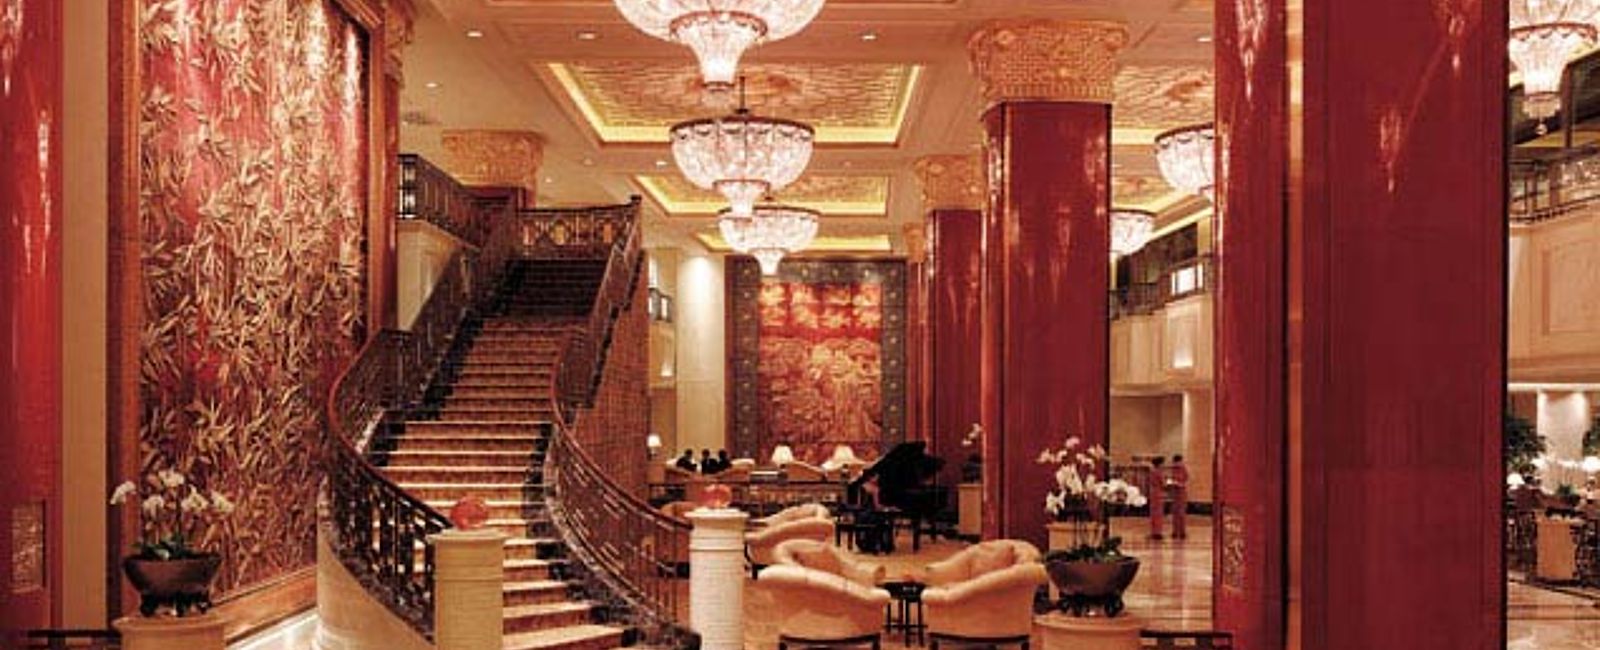 HOTEL TIPPS
 China World Hotel, Beijing, a Shangri-La Hotel 
 Exklusives Grand-Hotel für Geschäftsleute 